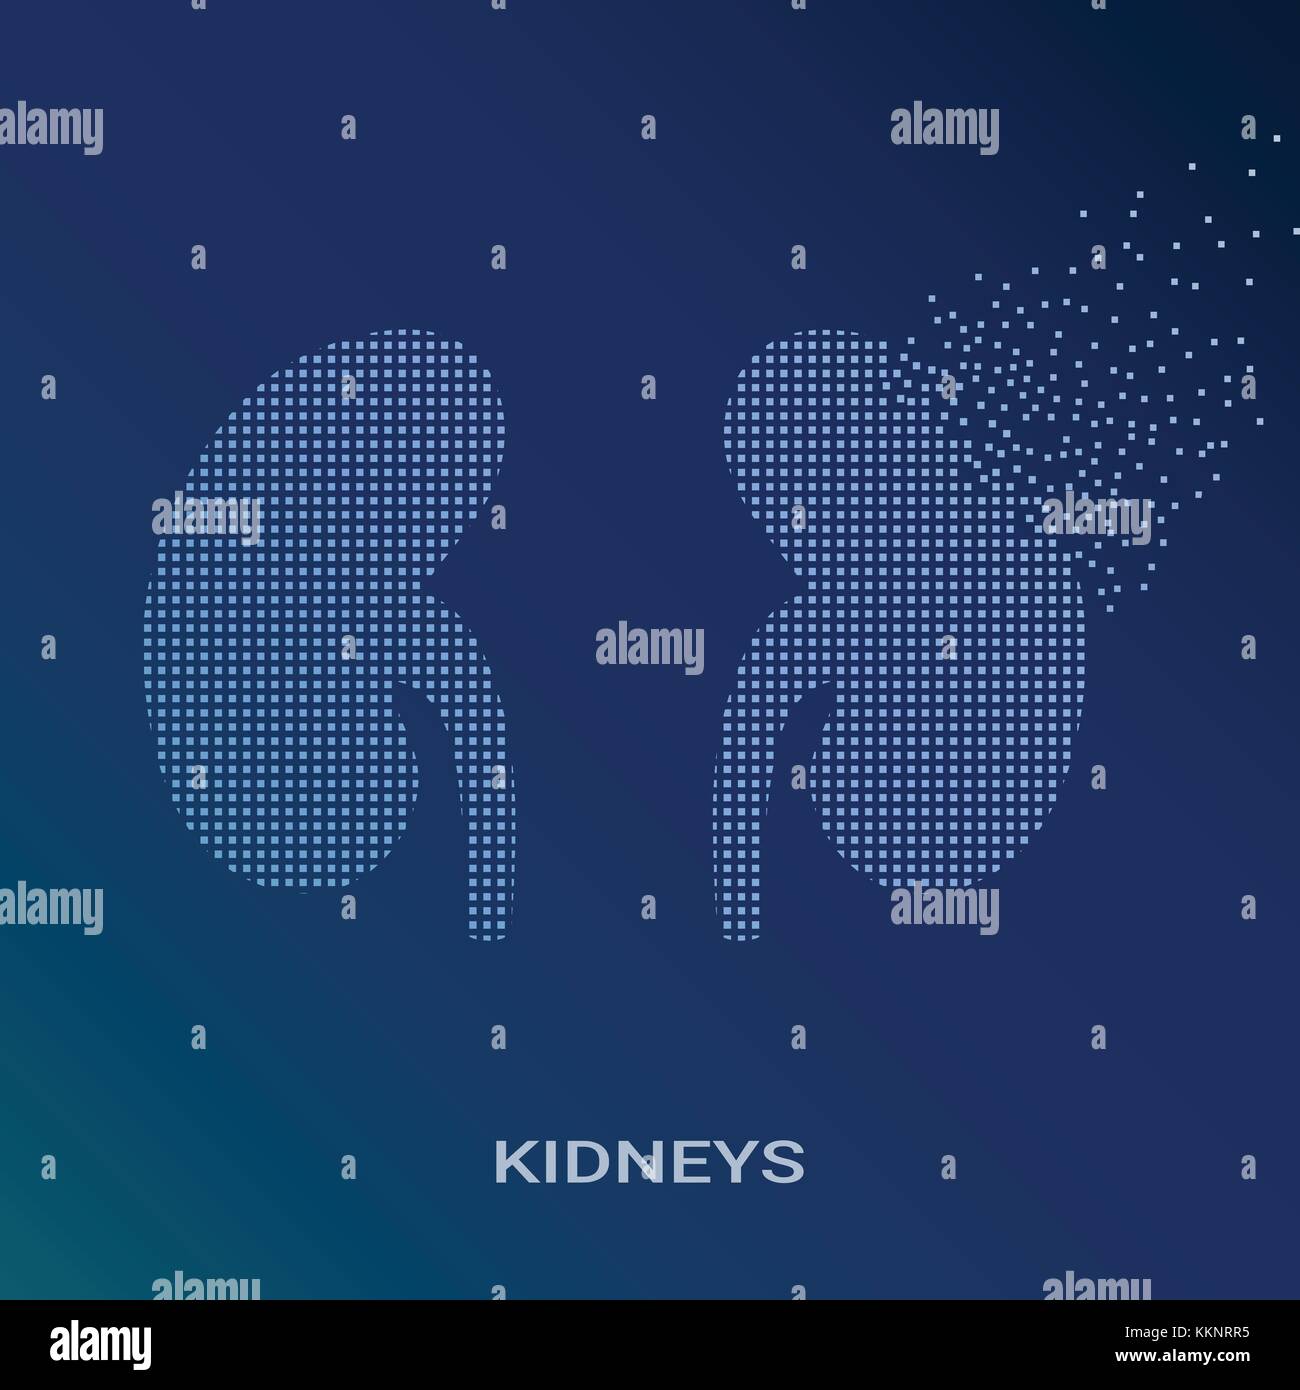 Abstract illustrazione vettoriale di reni umani su sfondo blu. pixel art logo di nefrologia e urologia. logotipo vettoriale illustrazione. creativi concetto medico Illustrazione Vettoriale